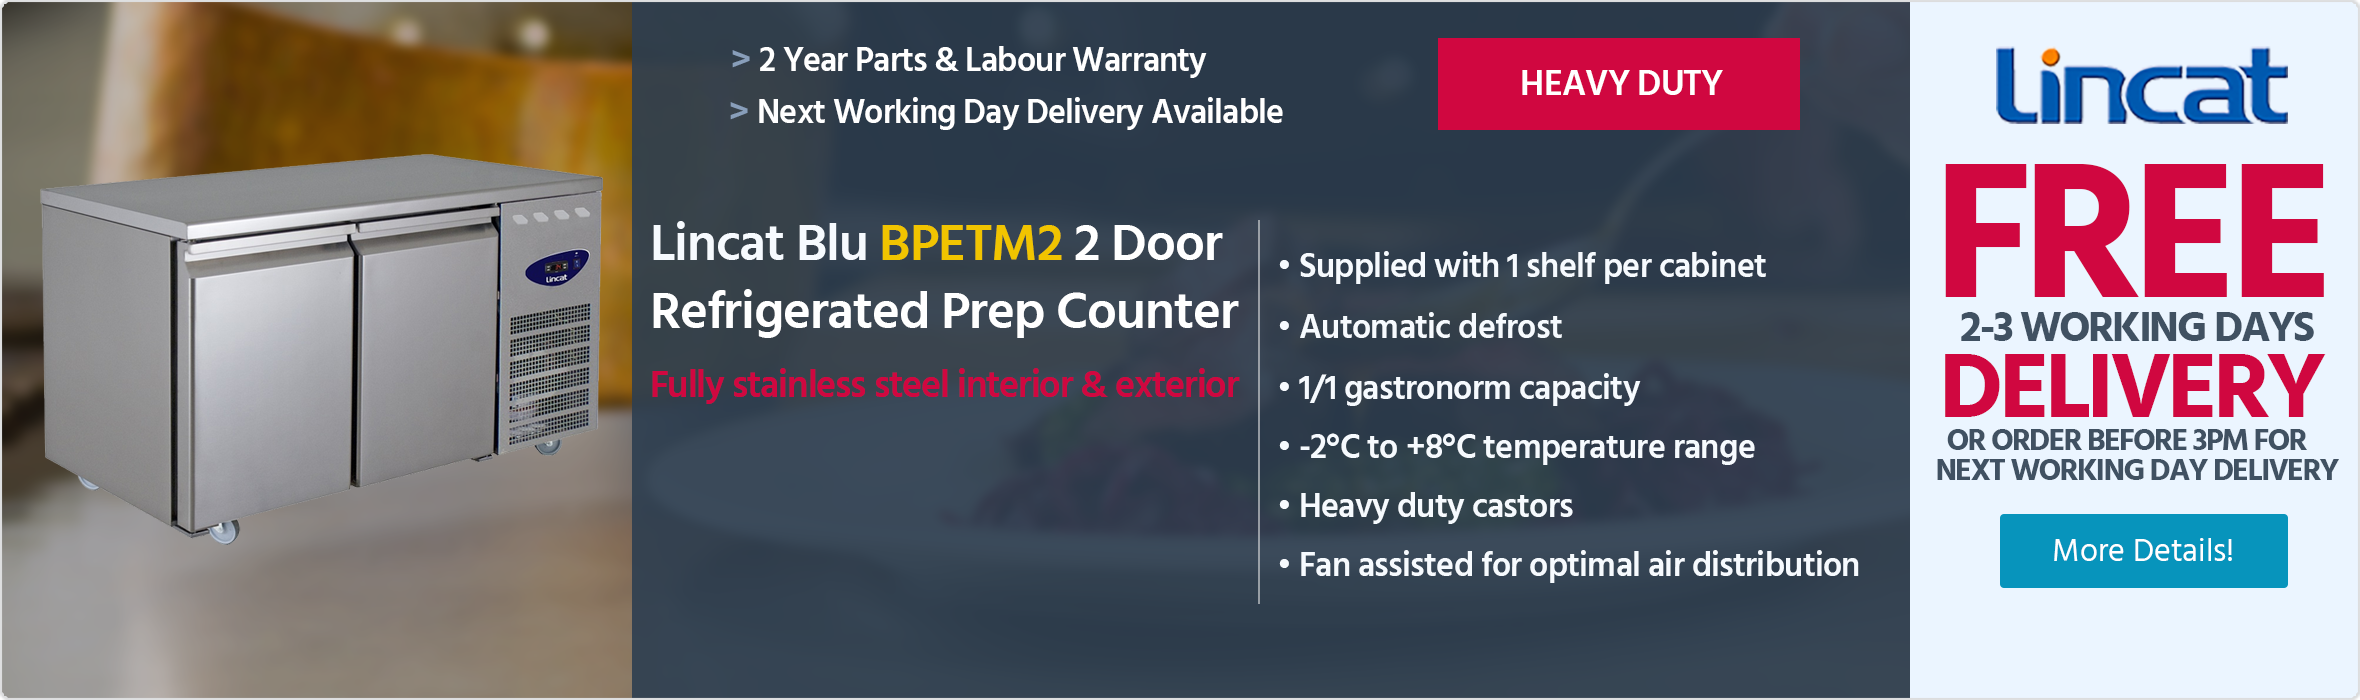 Lincat Blu BPETM2 2 Door Stainless Steel Refrigerated Prep Counter